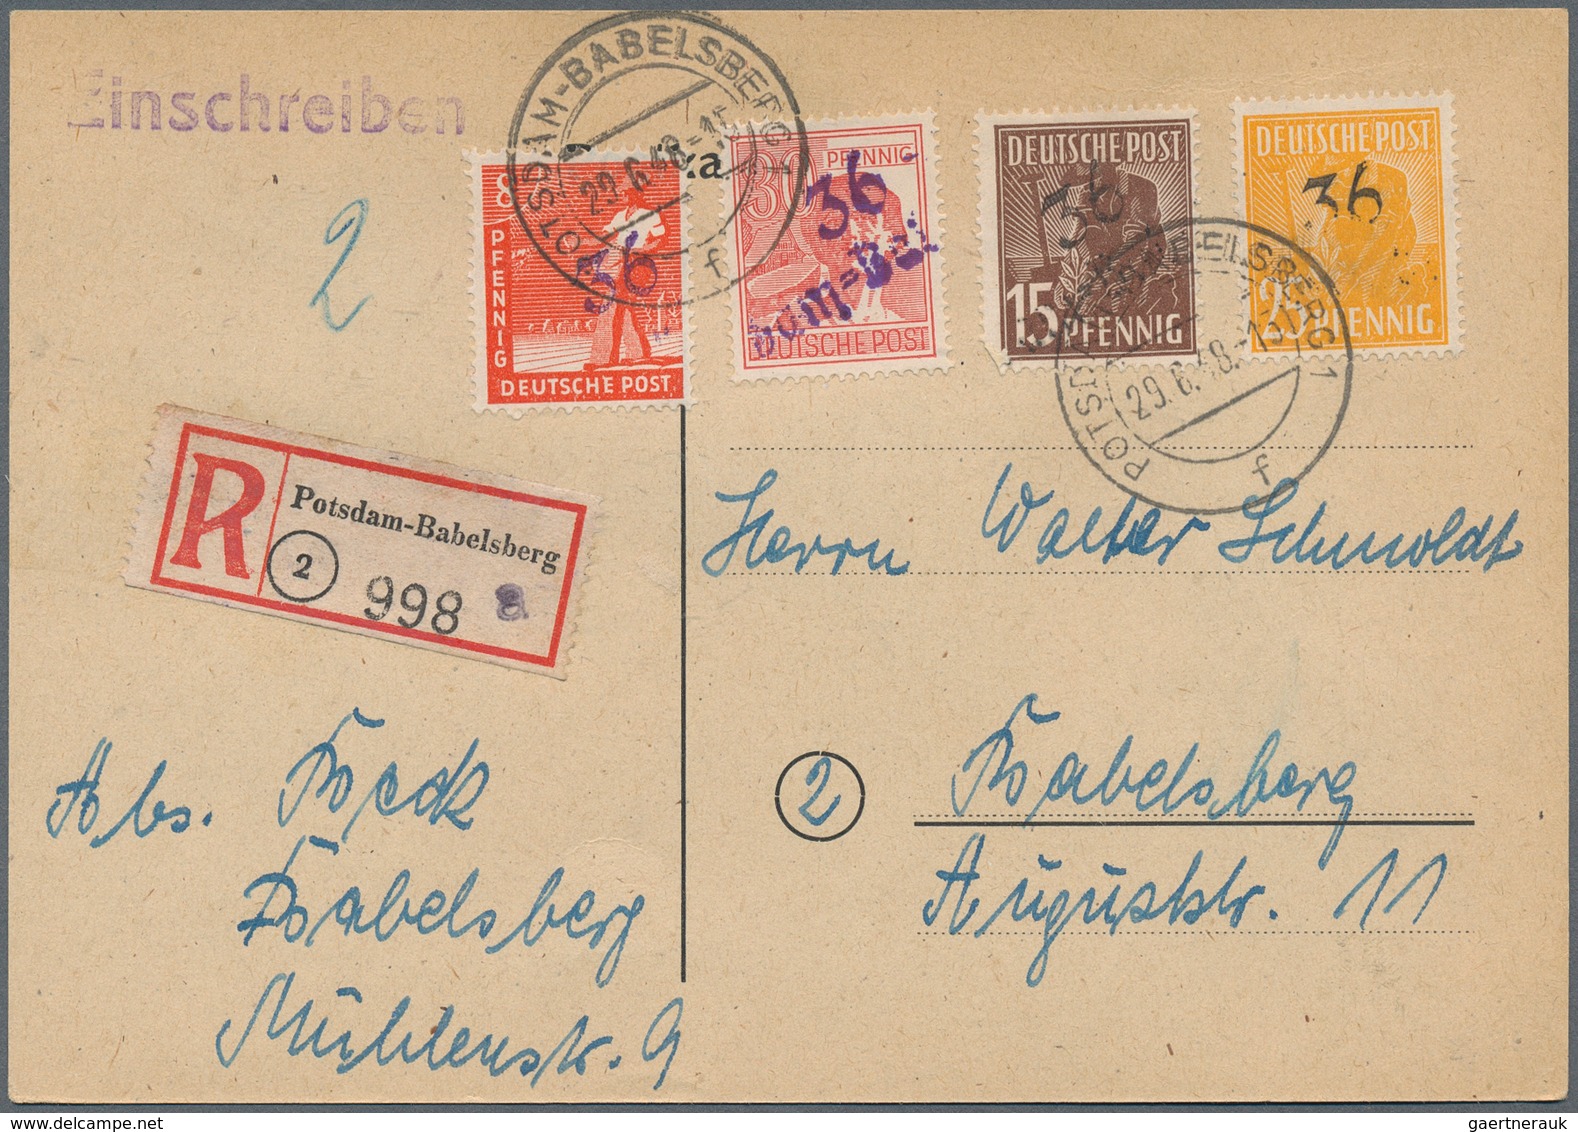 32119 Deutschland nach 1945: 1945/1956, vielseitiger Bestand von ca. 135 Briefen/Karten/wenige Vorderseite